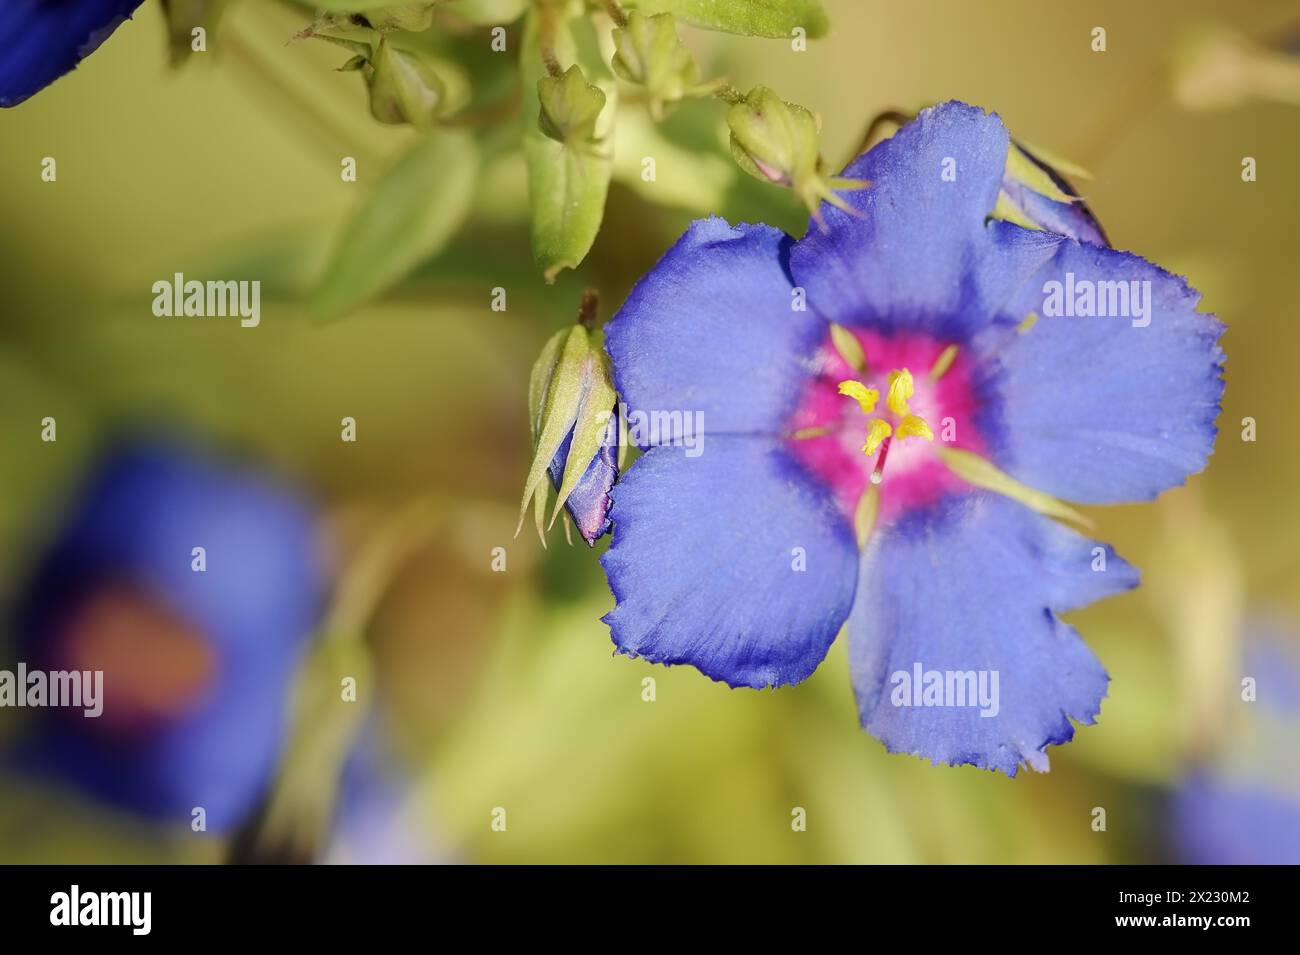 Blue pimpernel (Anagallis monellii), flower, native to the western Mediterranean region Stock Photo